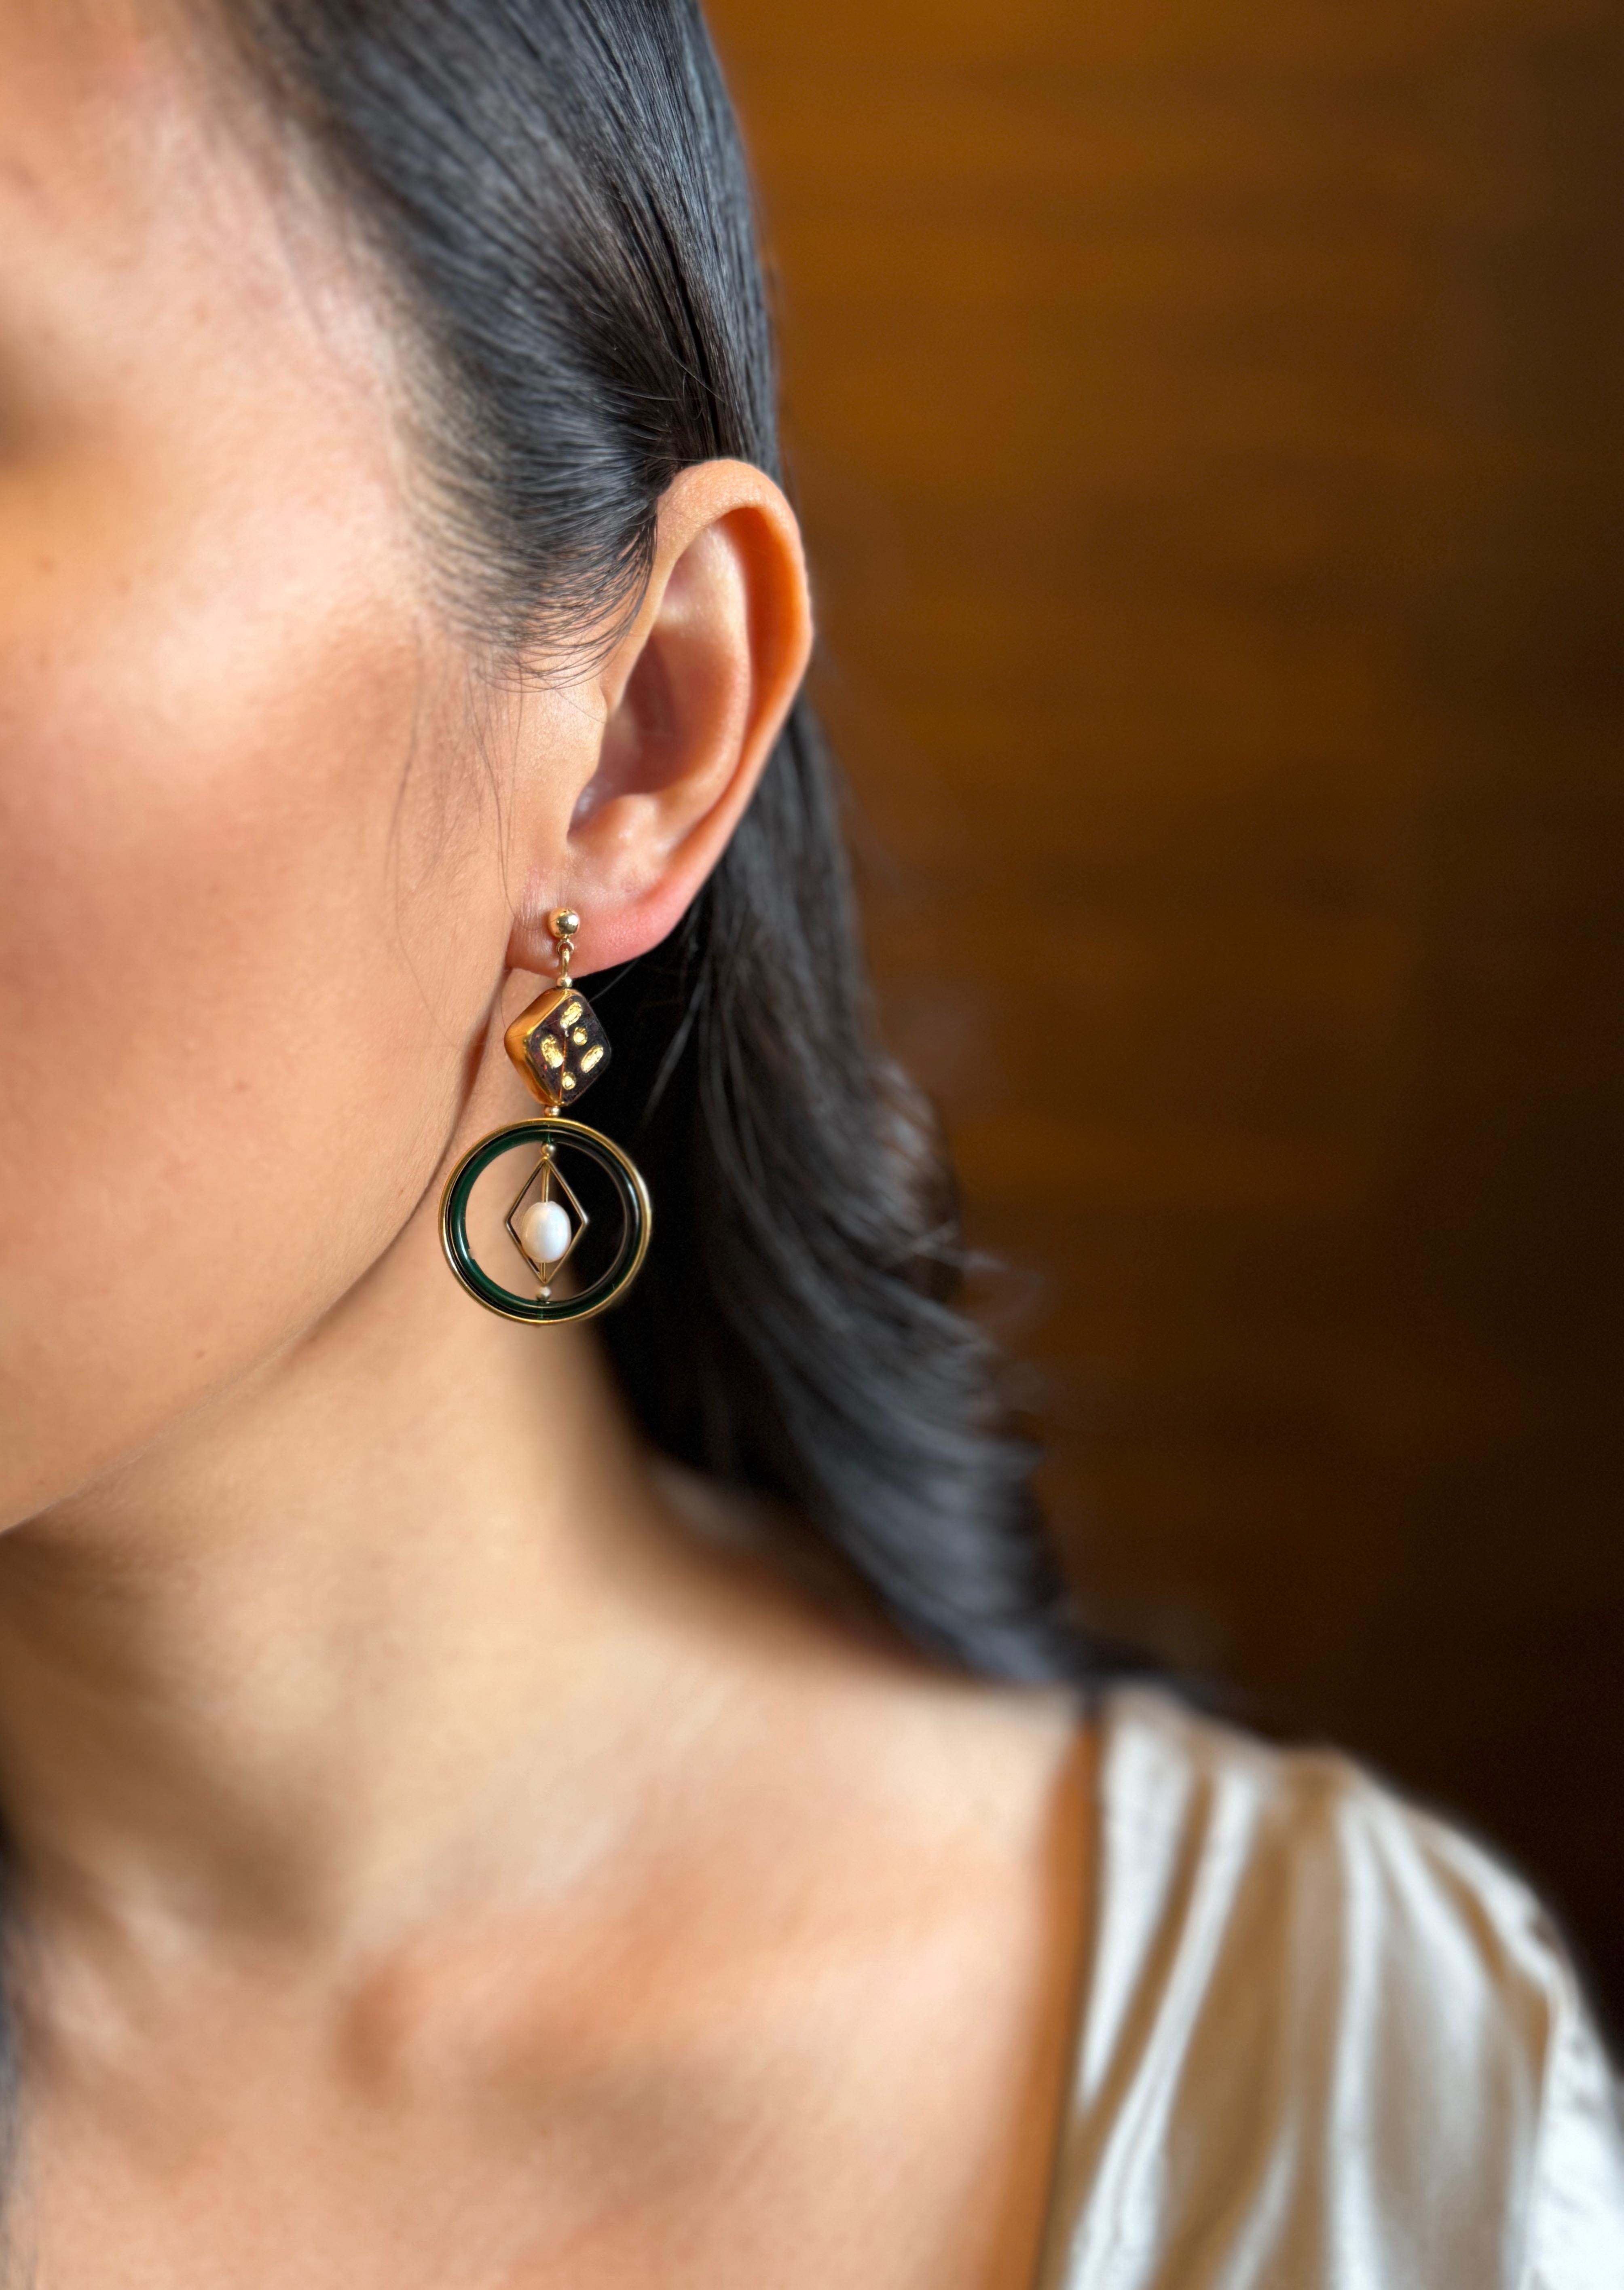 Chaque boucle d'oreille est composée de perles de verre allemandes brunes bordées d'or, de lucite vintage, de perles d'eau douce, de métal en laiton plaqué d'or 24 carats, d'accessoires en or et d'un clou d'oreille. 

Les perles de verre allemandes